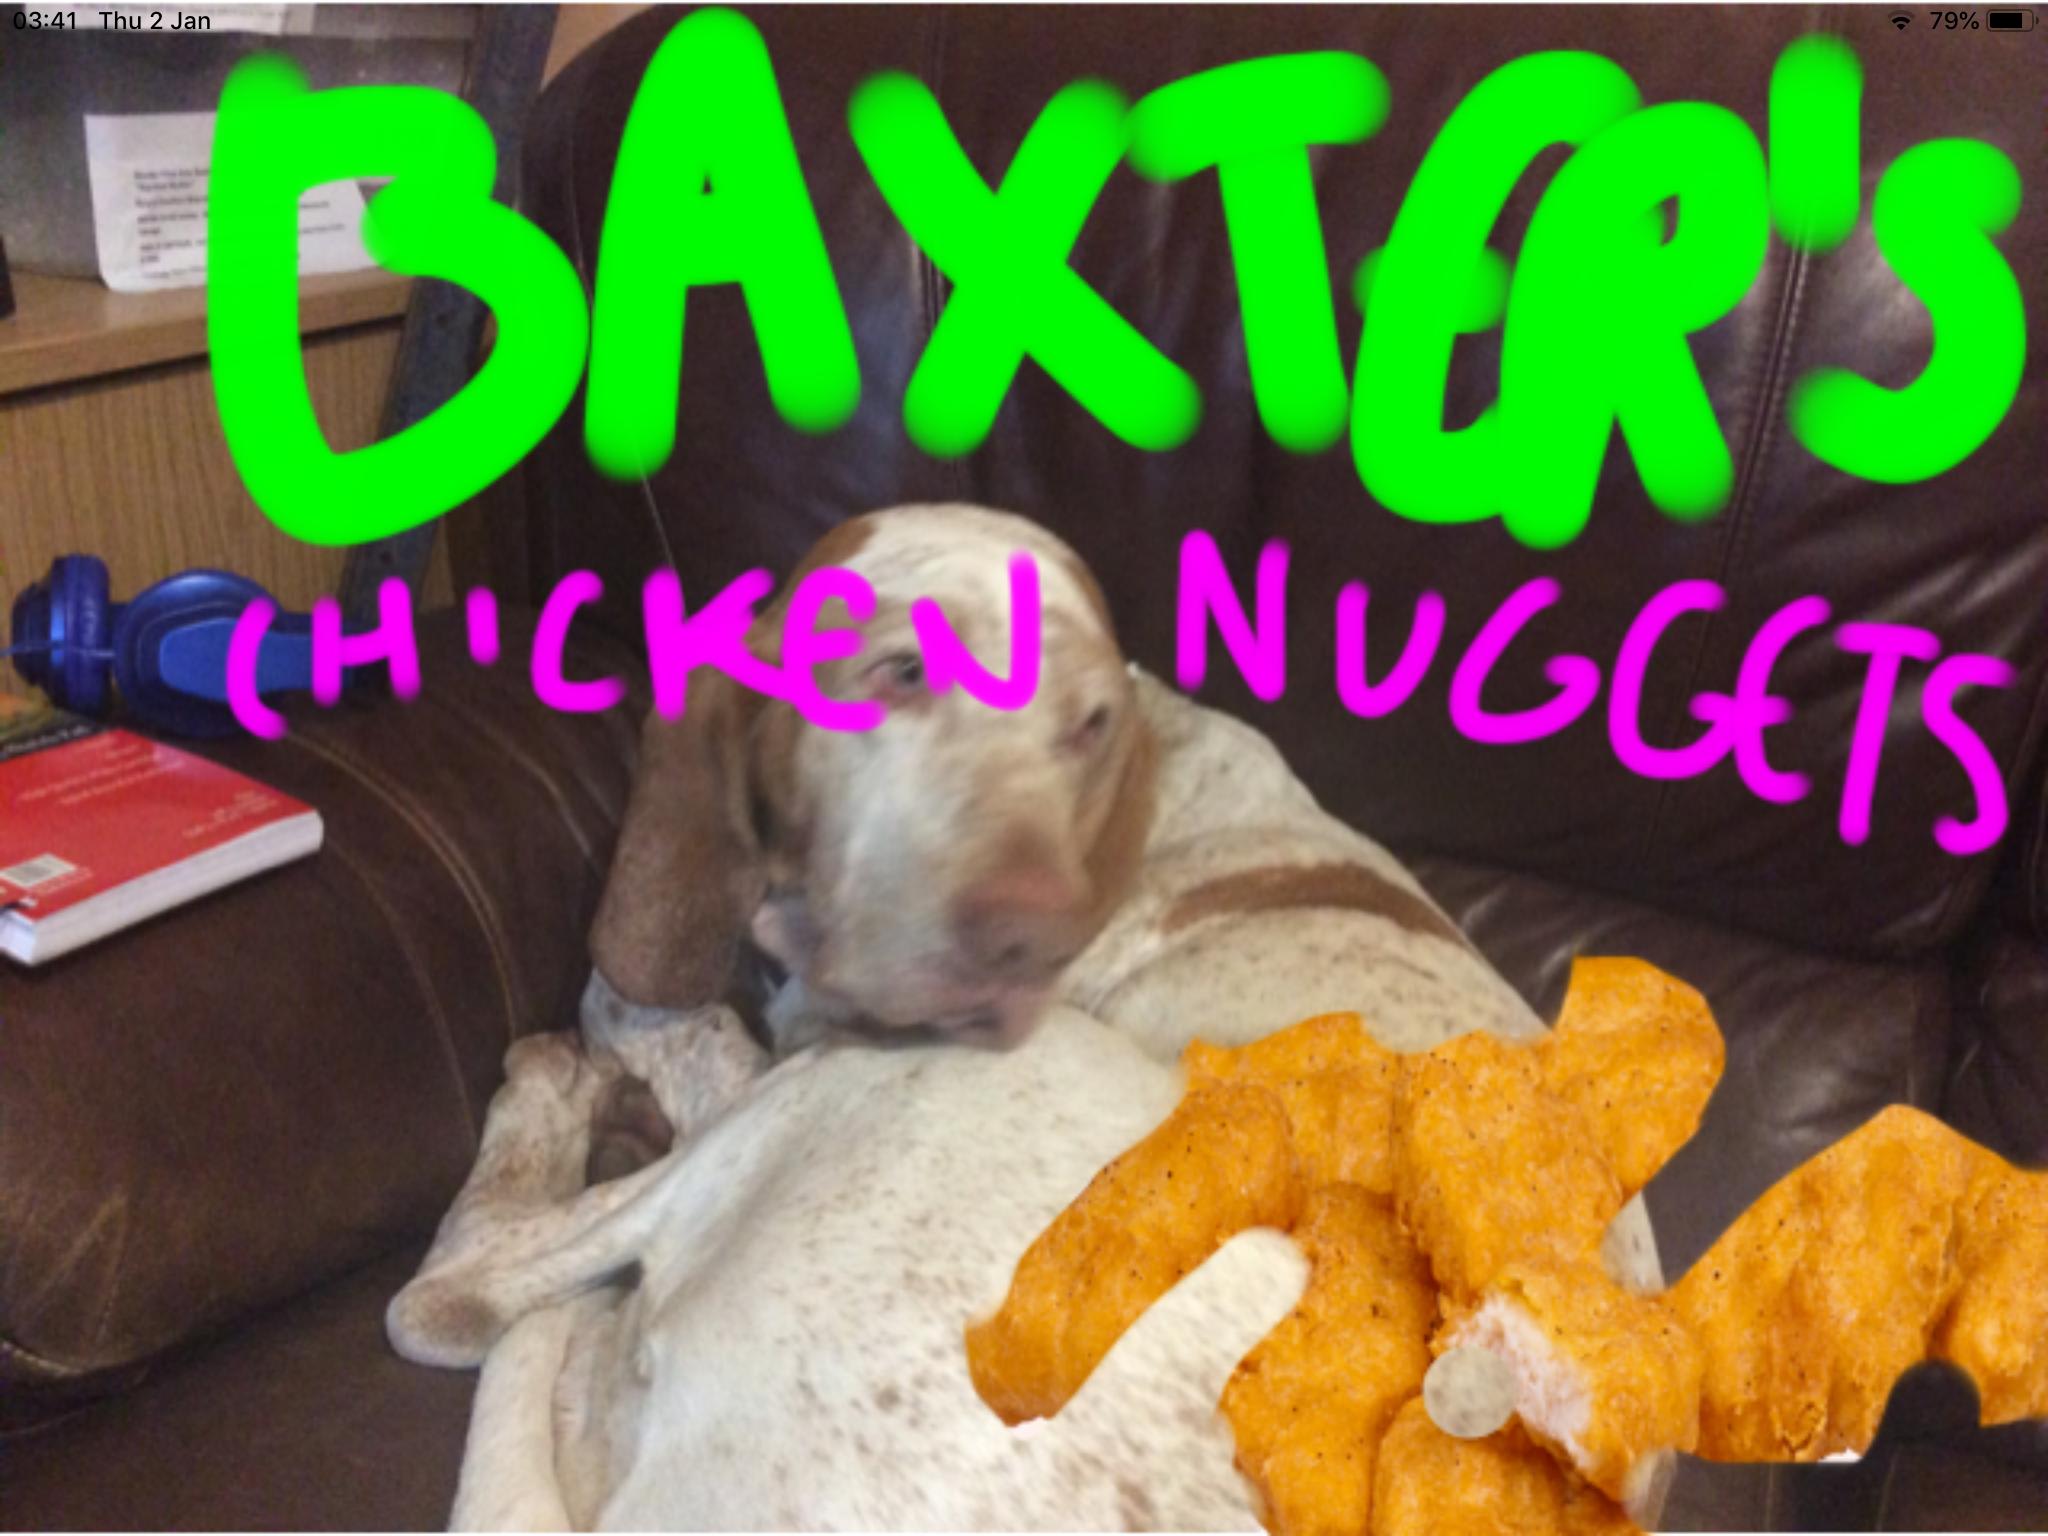 Baxter’s Chicken Nugget